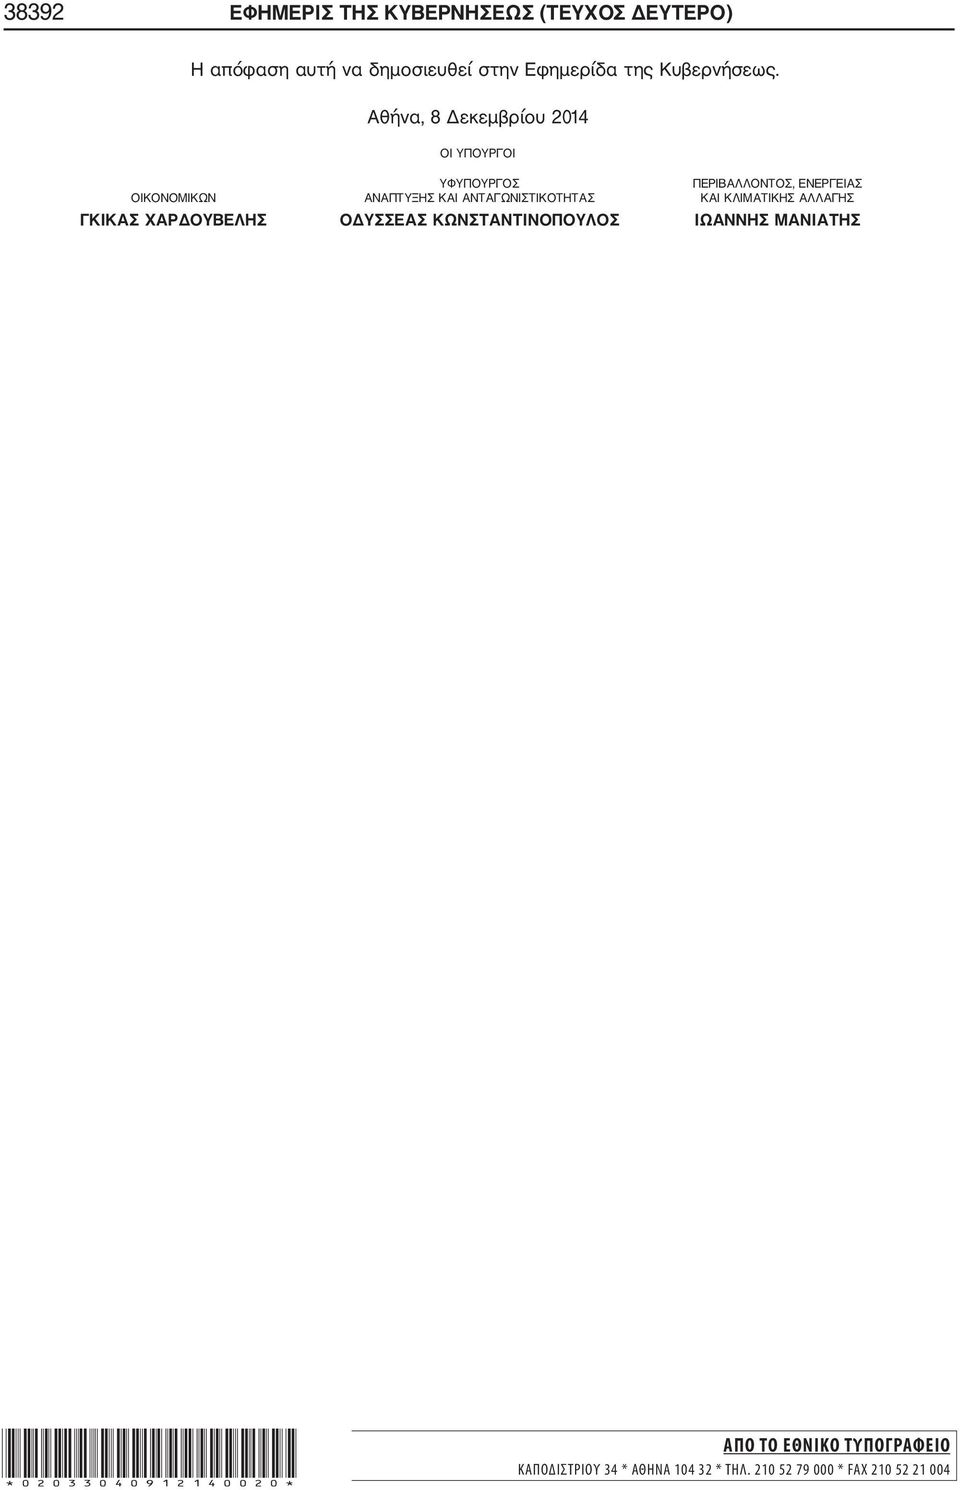 Αθήνα, 8 Δεκεμβρίου 2014 ΟΙ ΥΠΟΥΡΓΟΙ ΥΦΥΠΟΥΡΓΟΣ ΠΕΡΙΒΑΛΛΟΝΤΟΣ, ΕΝΕΡΓΕΙΑΣ ΟΙΚΟΝΟΜΙΚΩΝ ΑΝΑΠΤΥΞΗΣ ΚΑΙ